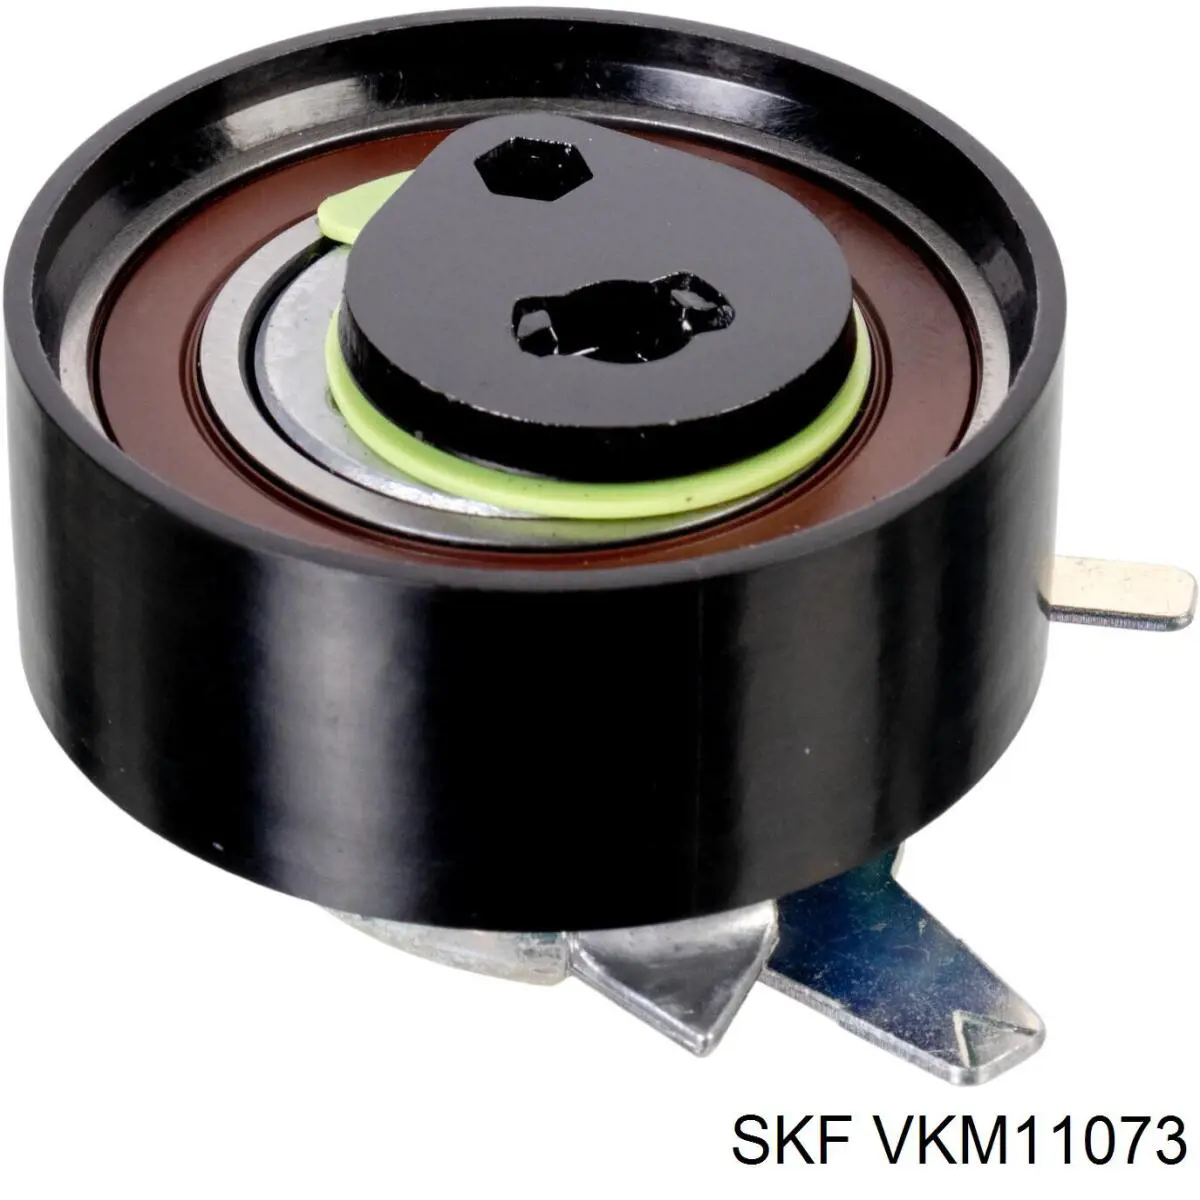 VKM 11073 SKF polea tensora, correa dentada, bomba de alta presión